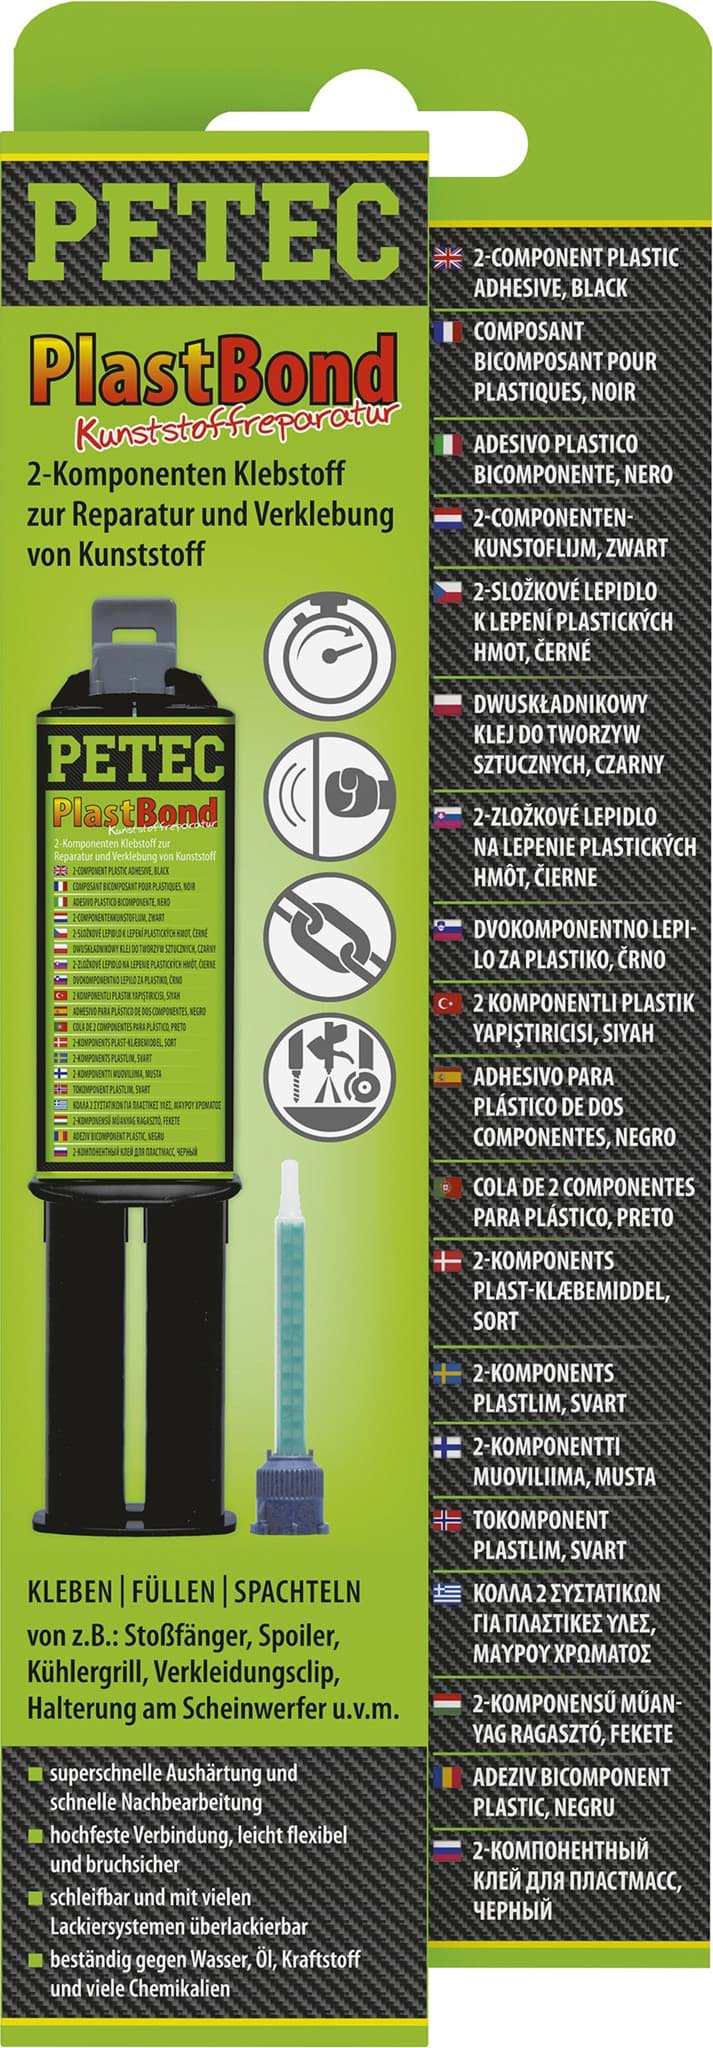 Picture of Petec PlastBond 2-Komponenten Hochleistungskleber für Kunststoff 24ml